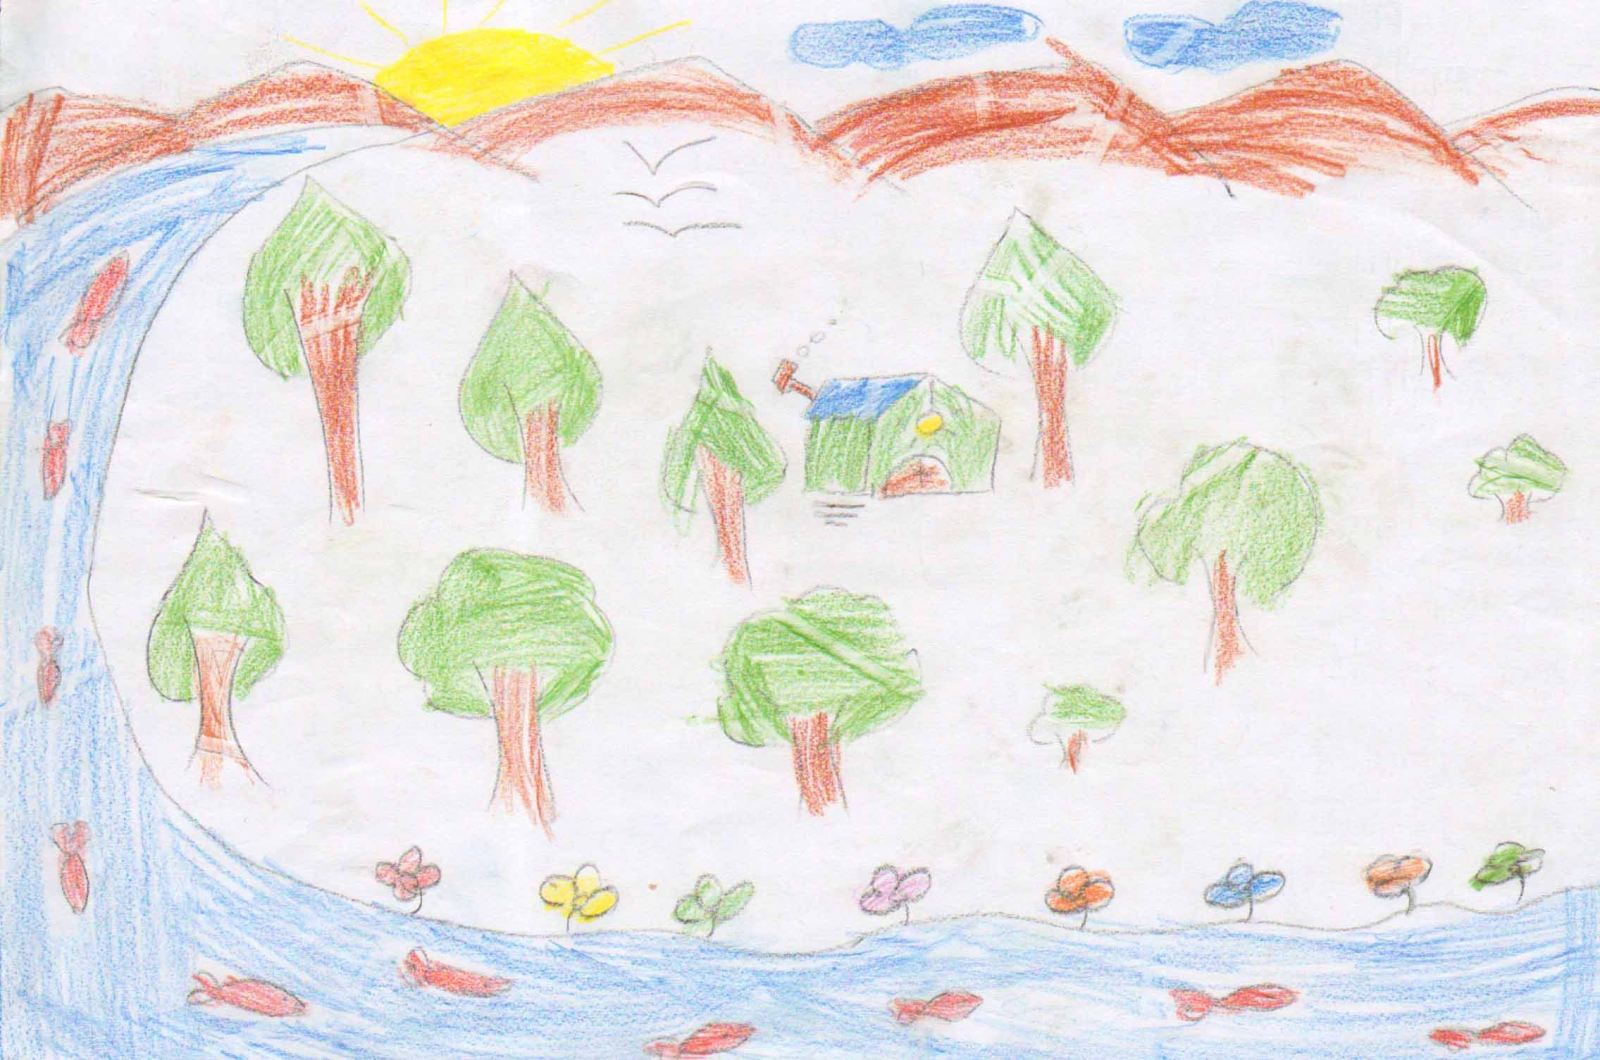 نقاشی کودکانه در مورد حفظ جنگل